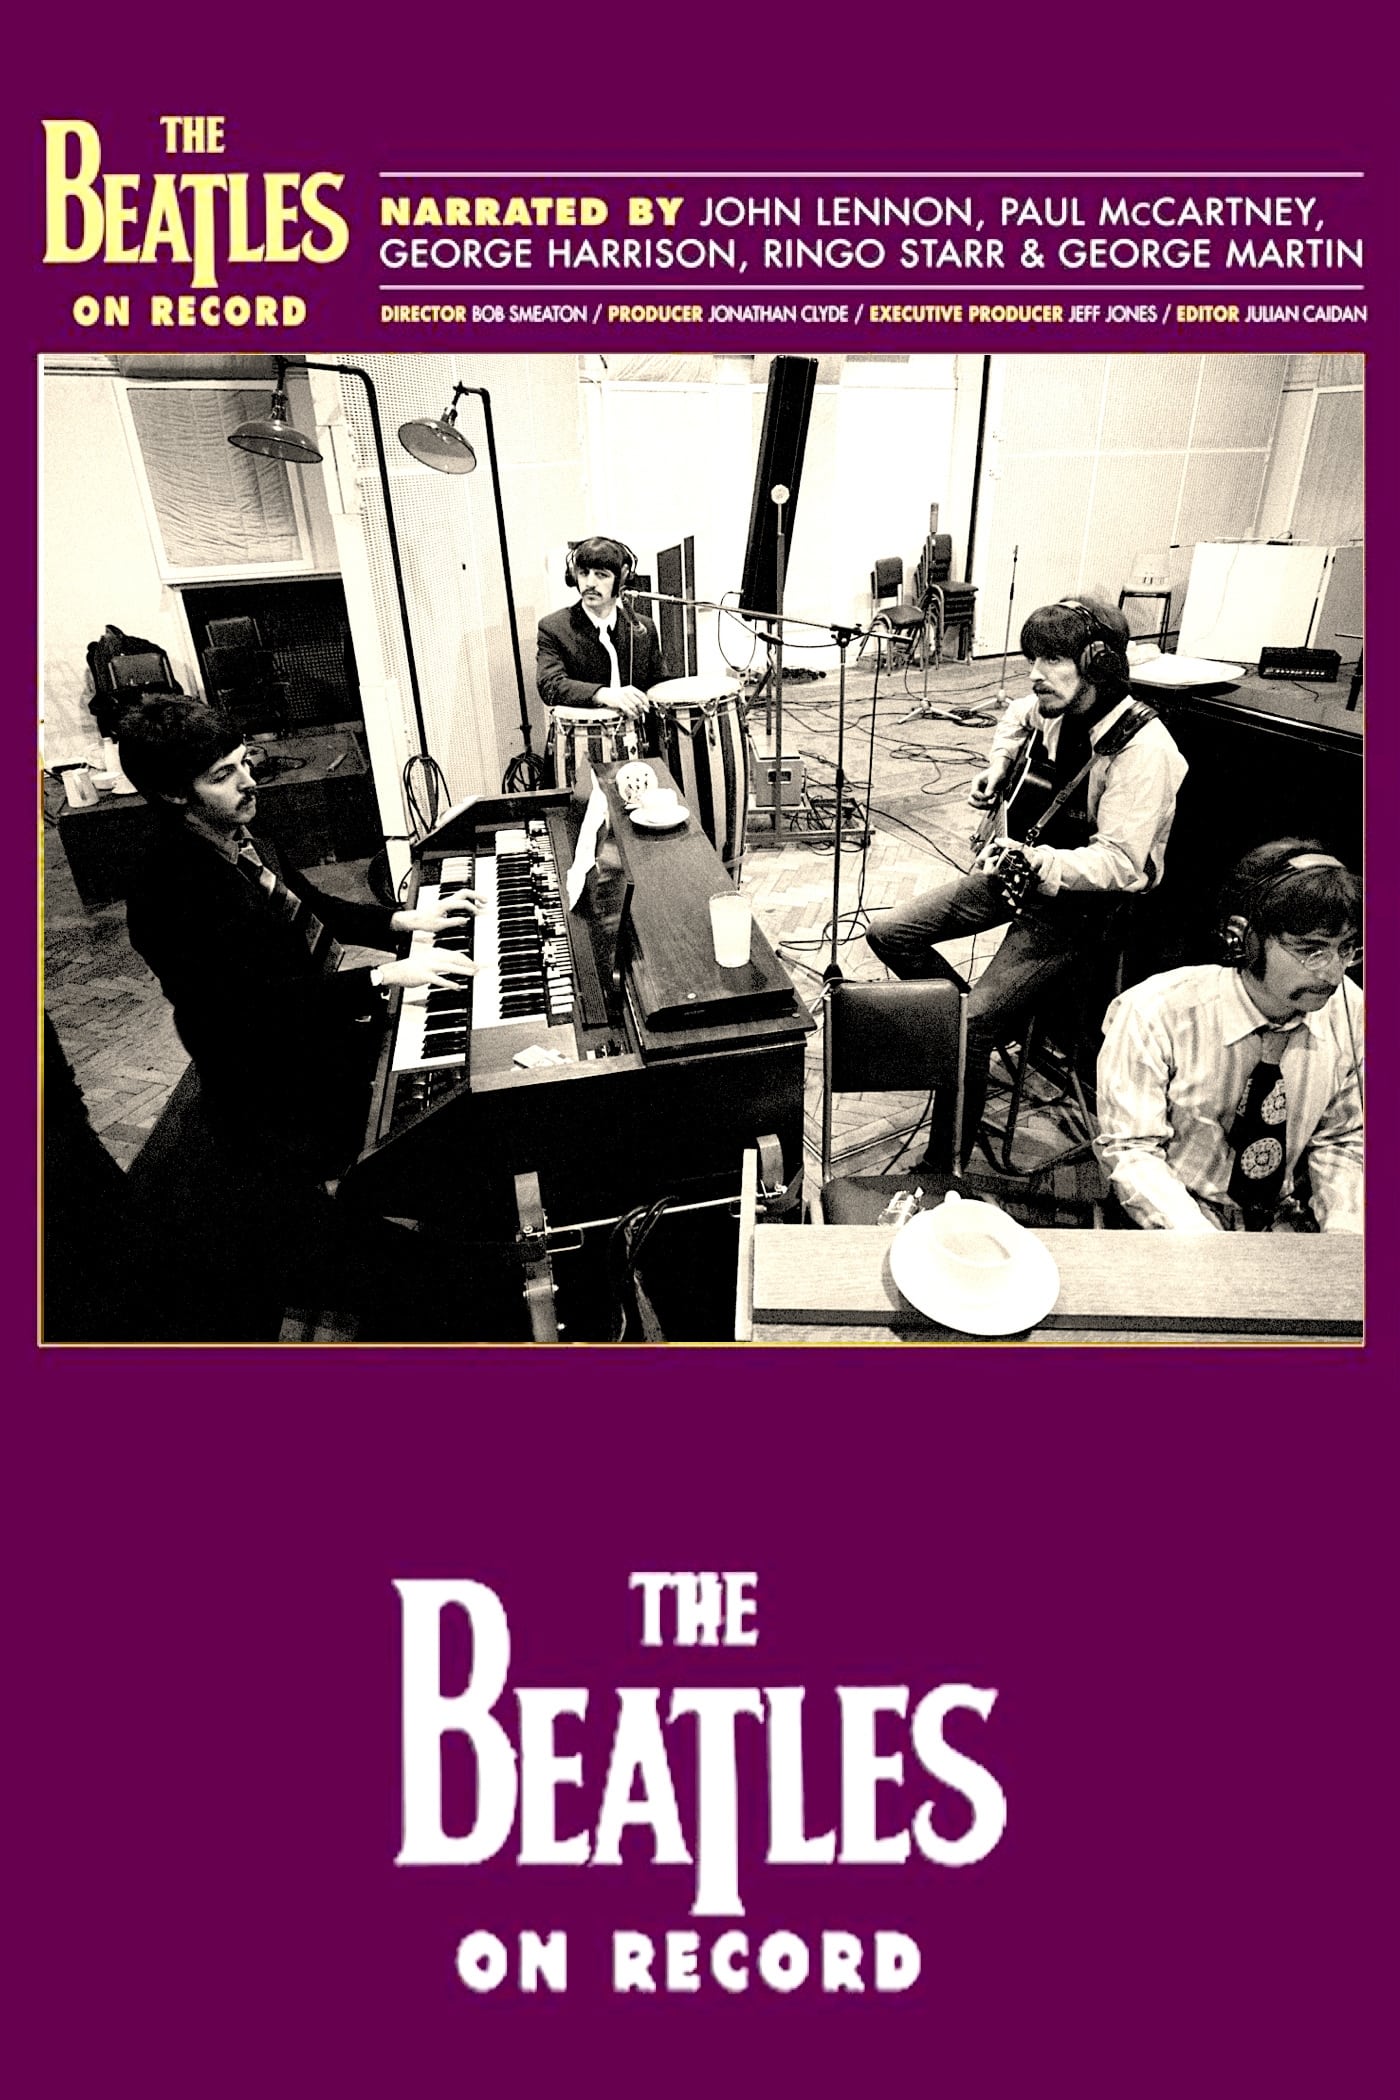 Los Beatles en el estudio